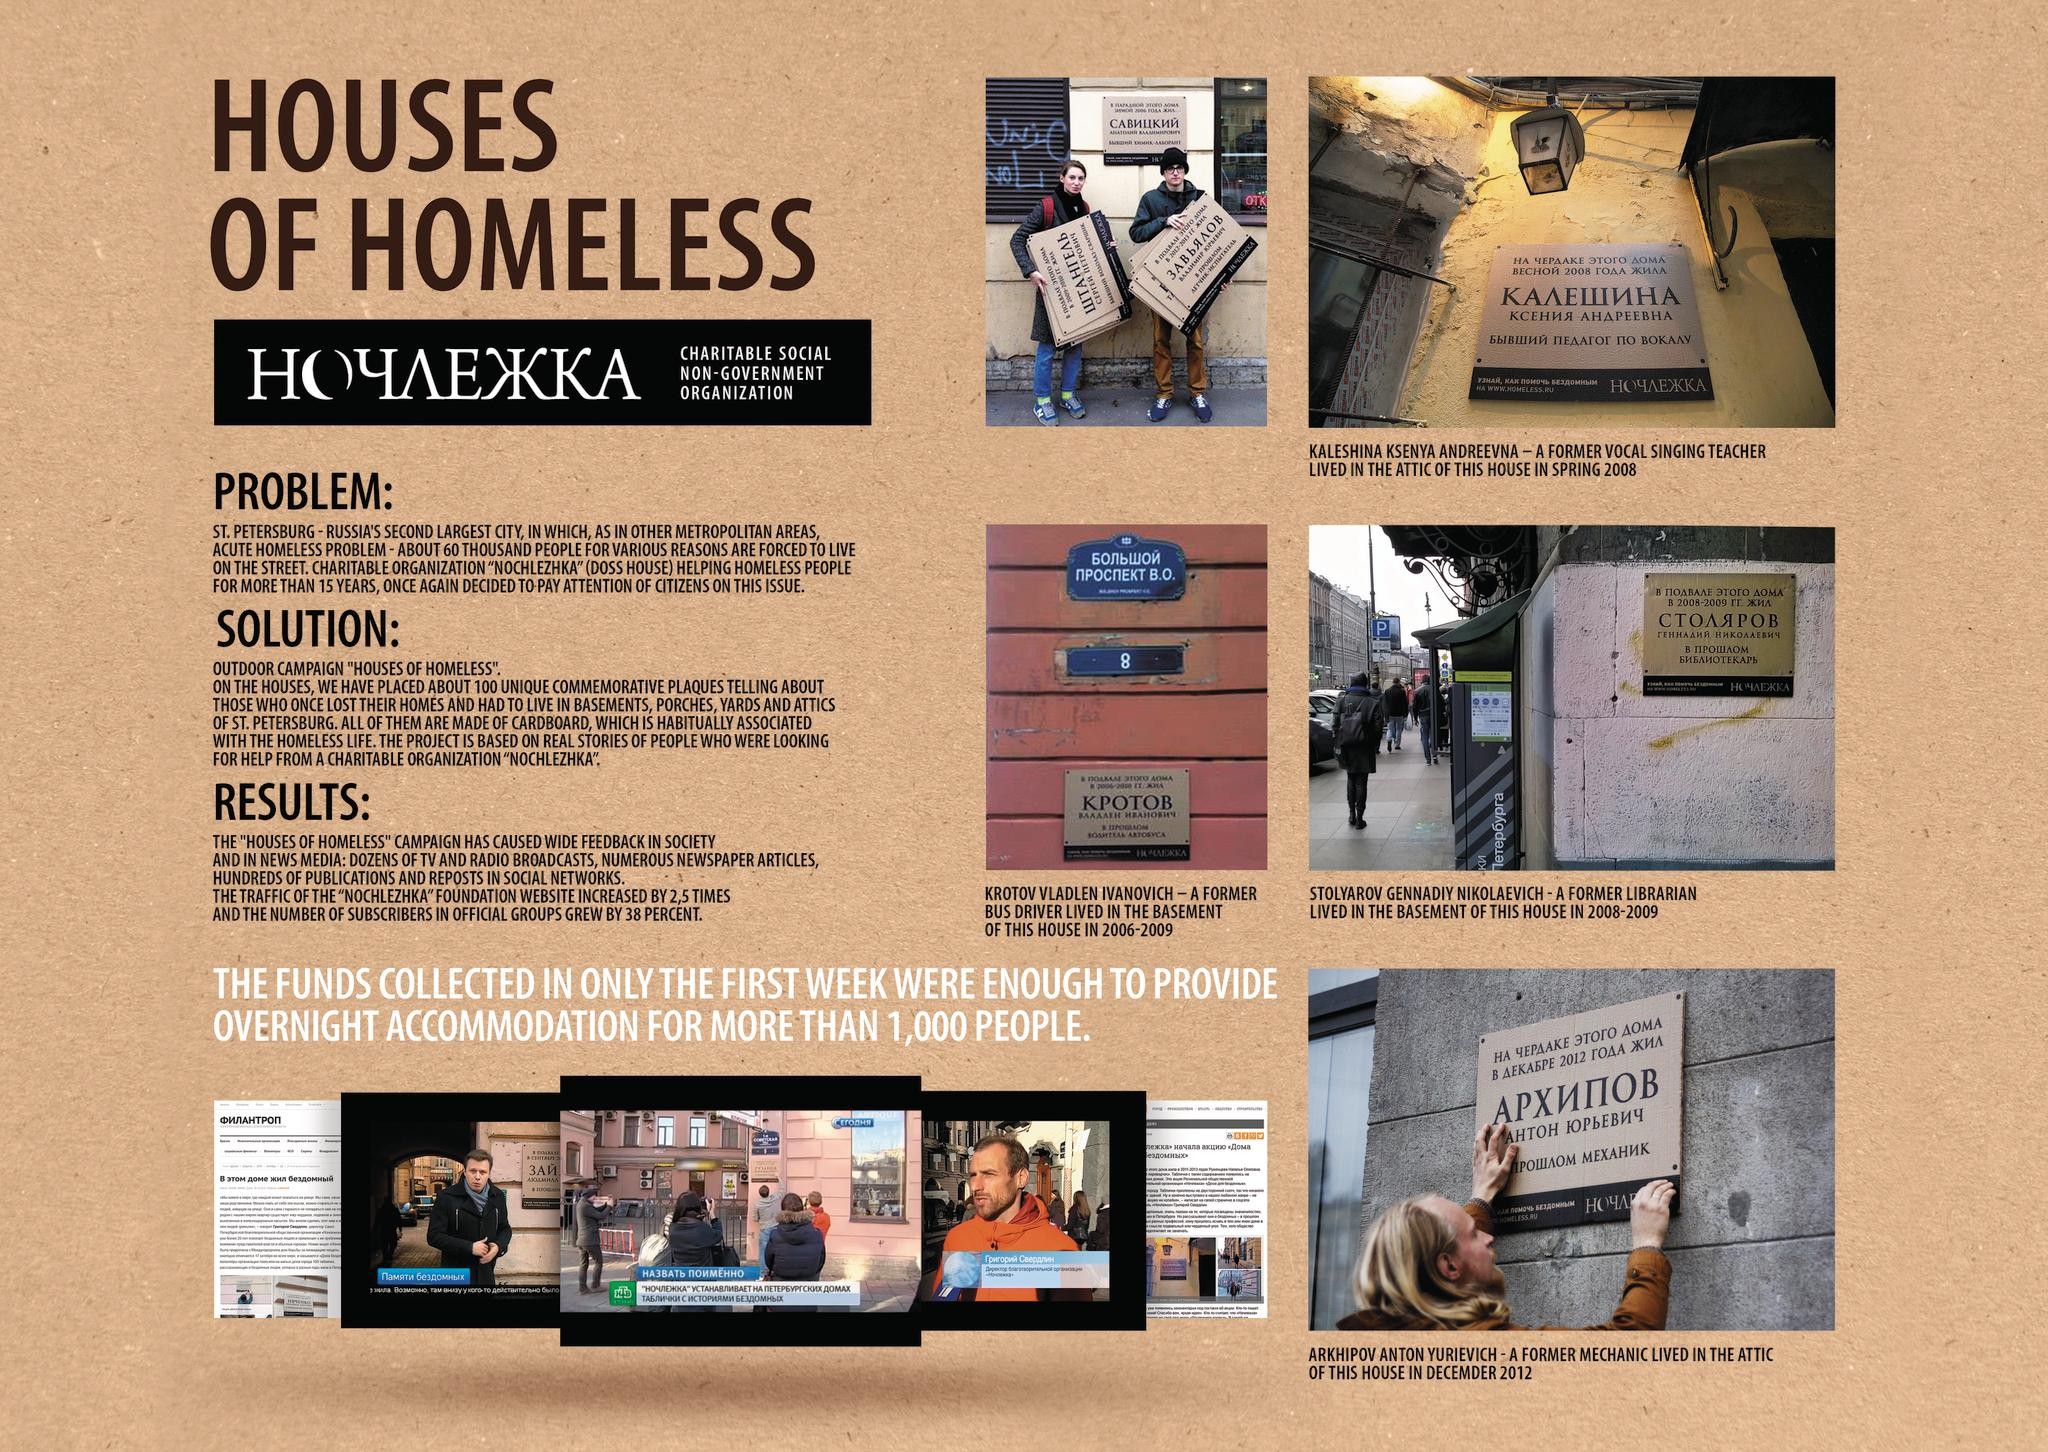 "HOUSES OF HOMELESS"